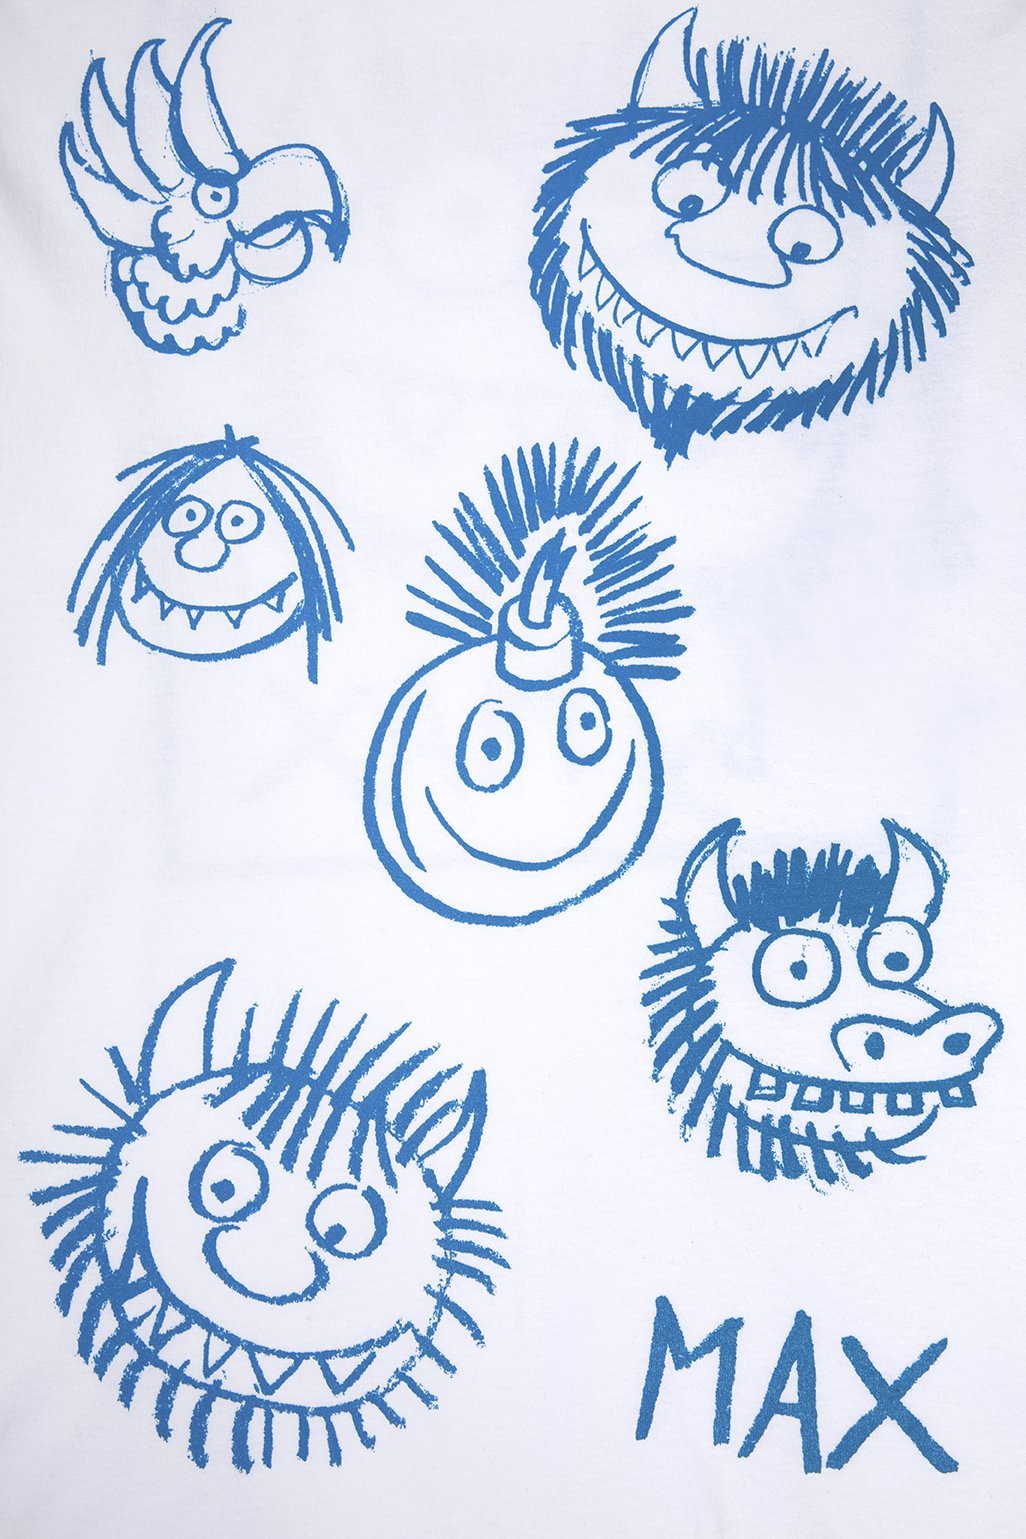 Max Drawings LS T-Shirt 